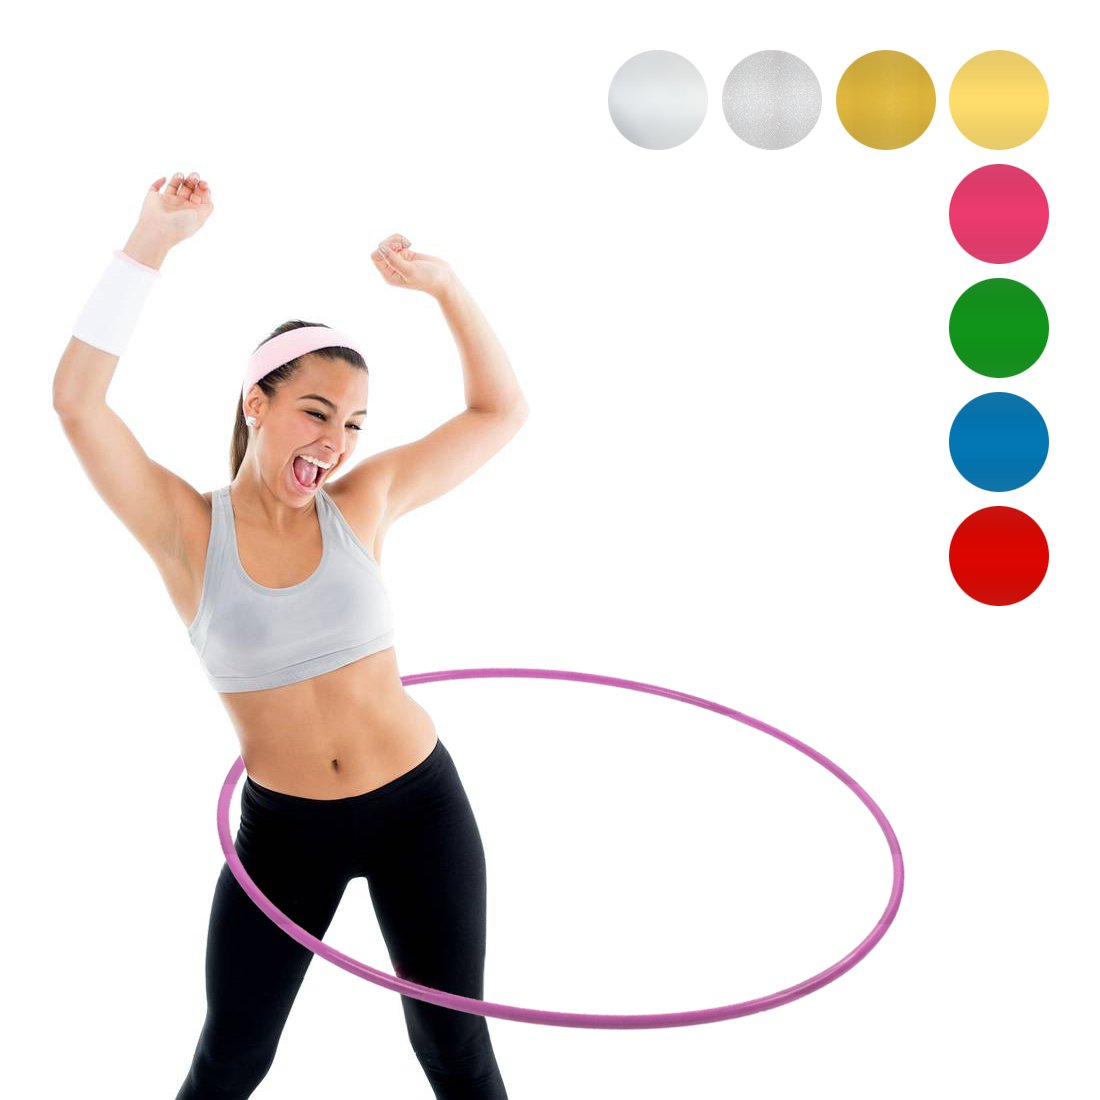 NiroSport Hula Hoop Fitnessreifen für Kinder und Erwachsene, bruchsicheres Aluminium, 90 cm Durchmesser, 360 Gewicht (Rosa)